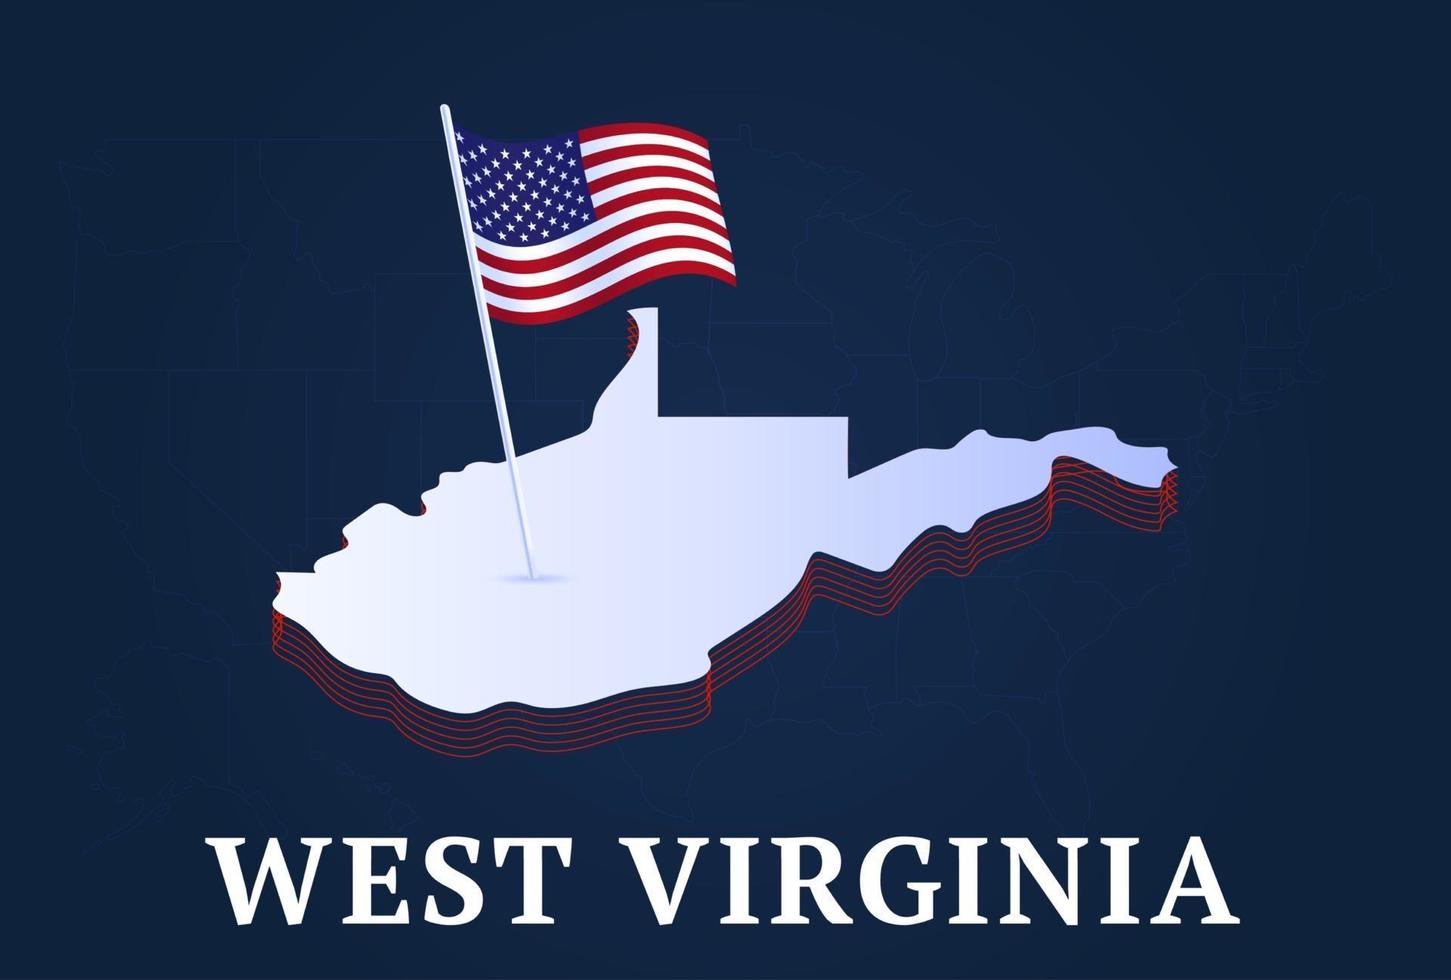 West Virginia State isometrische Karte und USA Nationalflagge 3d isometrische Form von uns State Vektor-Illustration vektor